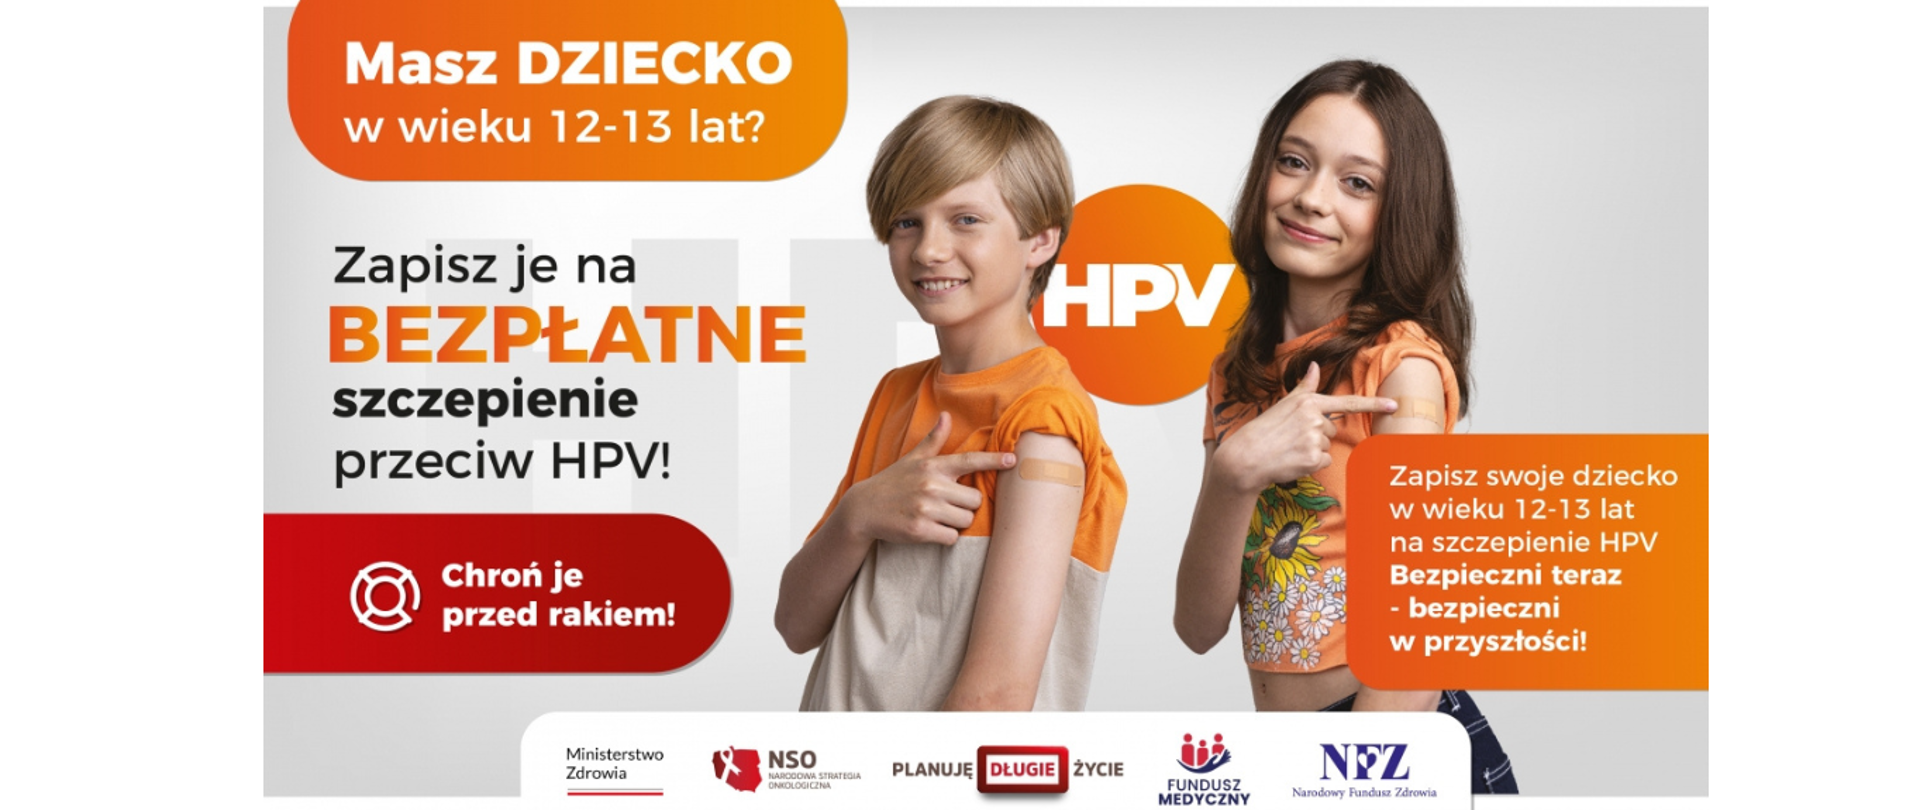 Bezpłatne szczepienie dzieci przeciw HPV